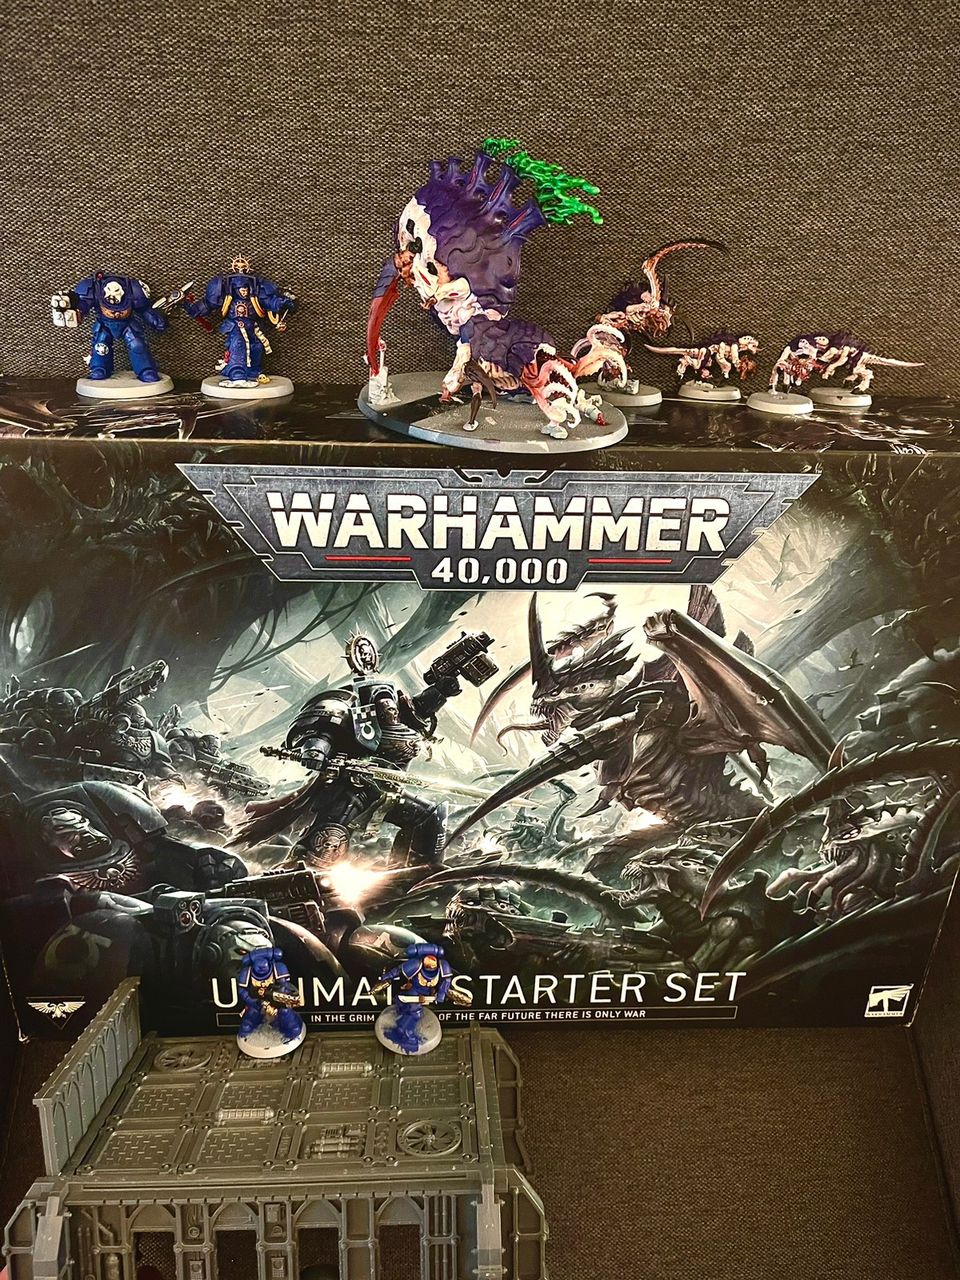 Warhammer 40k Ultimate starter set